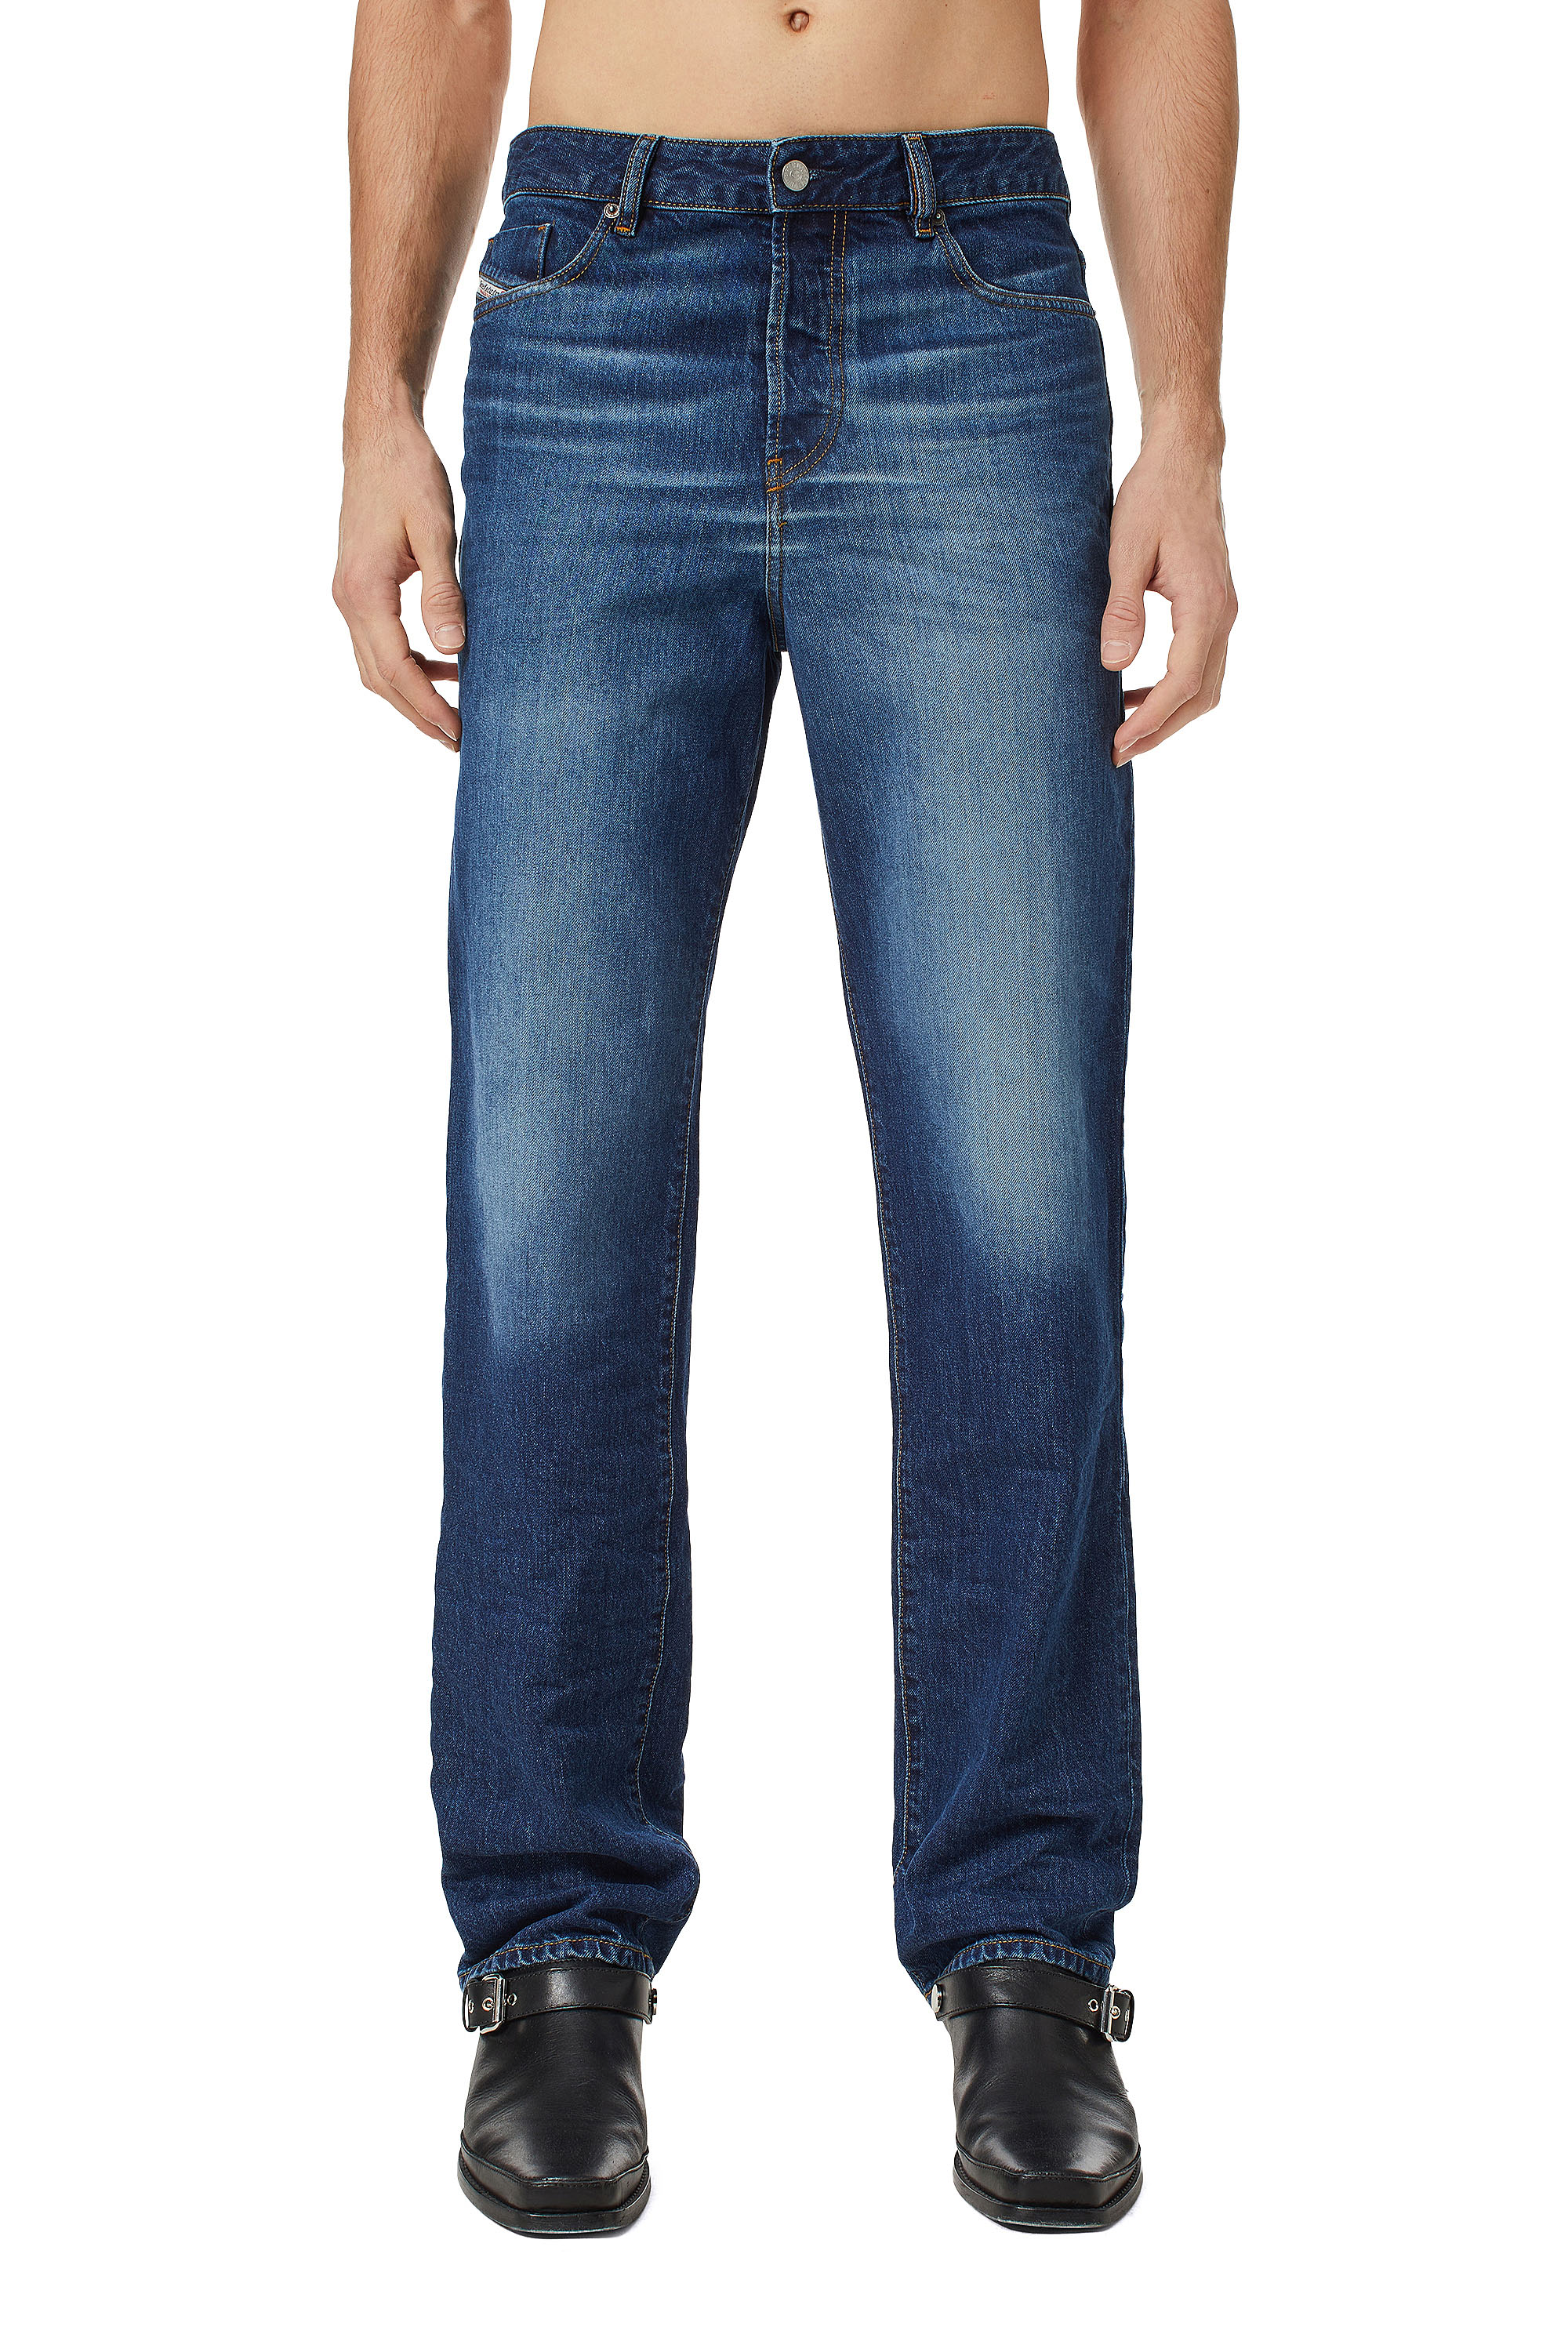 1955 09C65 Straight Jeans, Mittelblau - Jeans